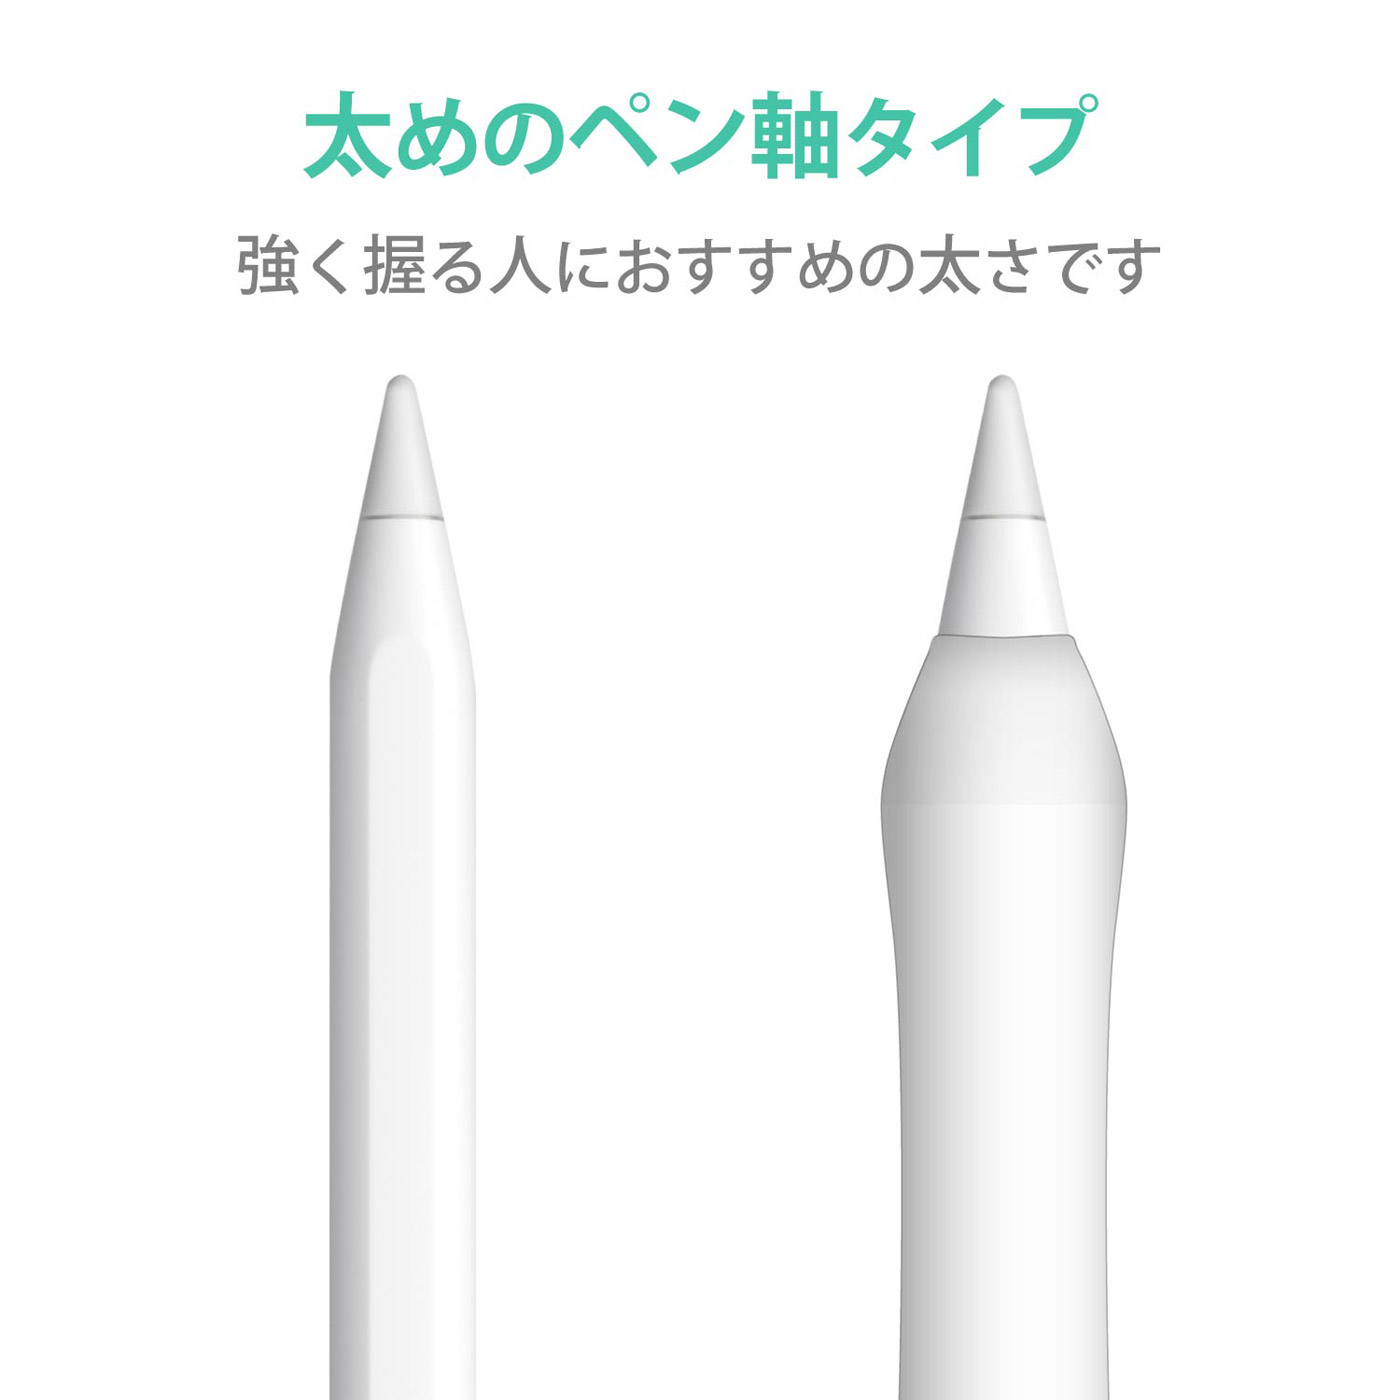 像Apple Pencil第2世代用太軸笔标签一样的握柄清除TB-APE2GFWCCR|no